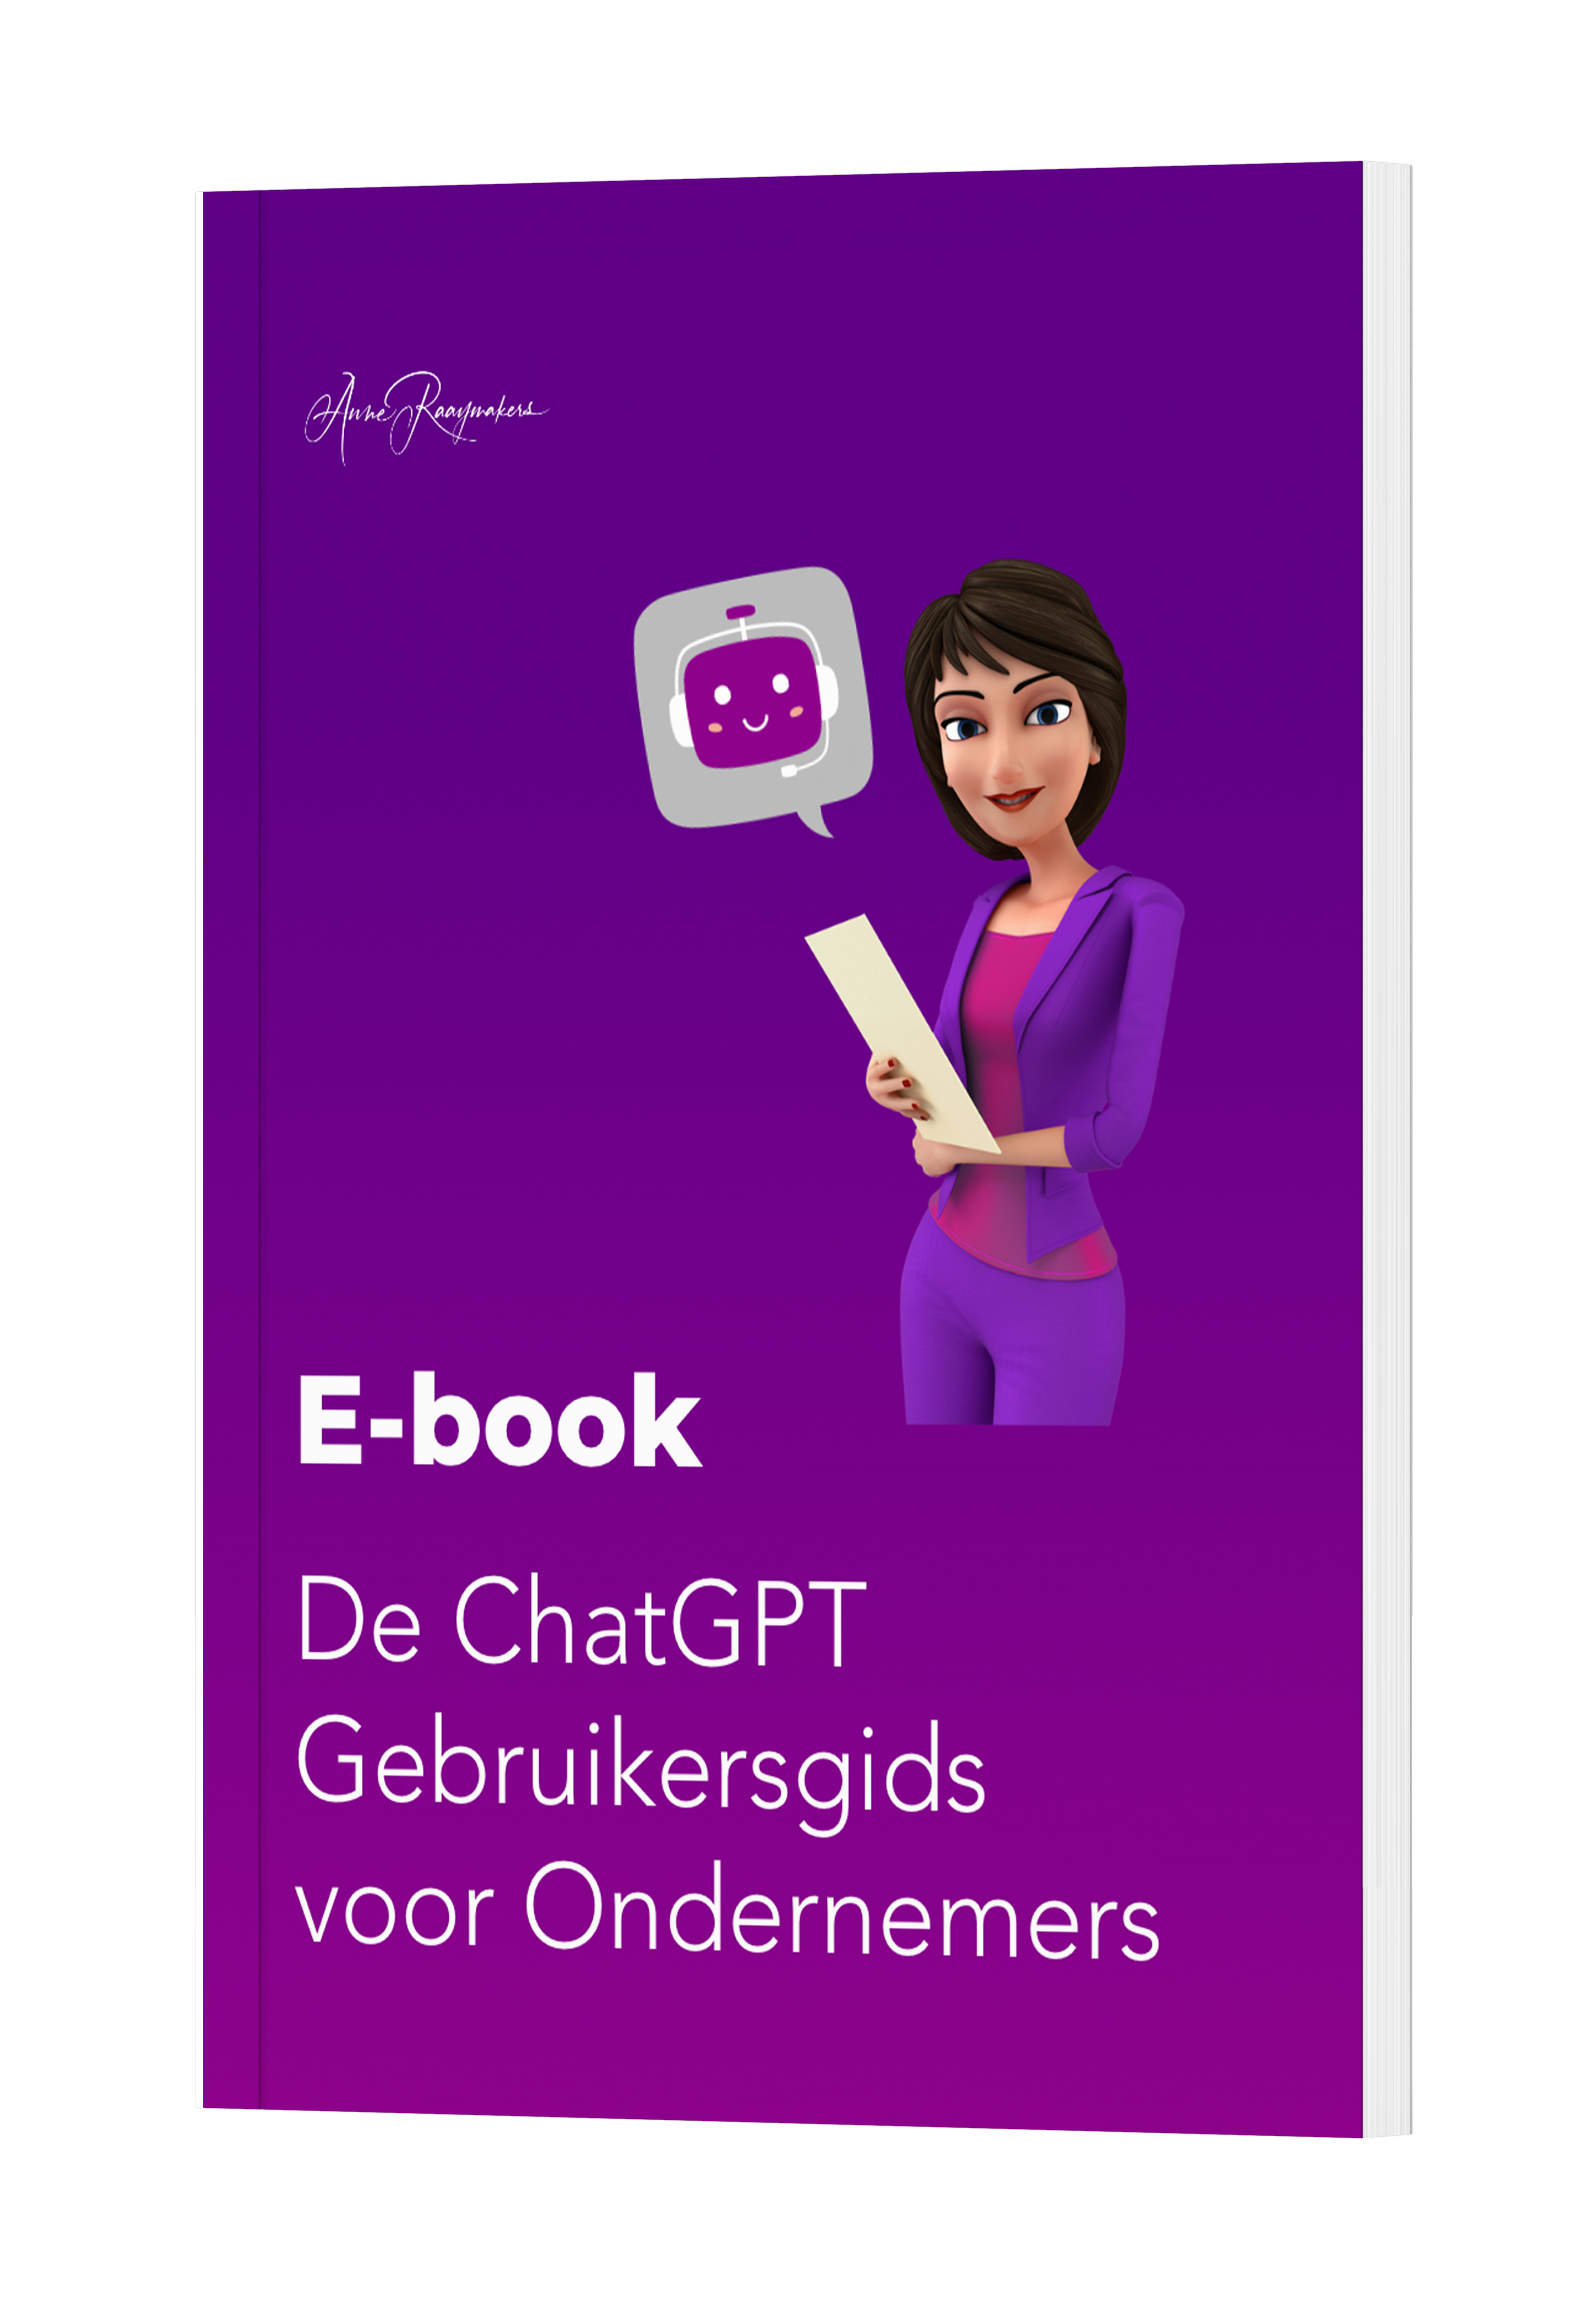 De ChatGPT Gebruikersgids voor Ondernemers